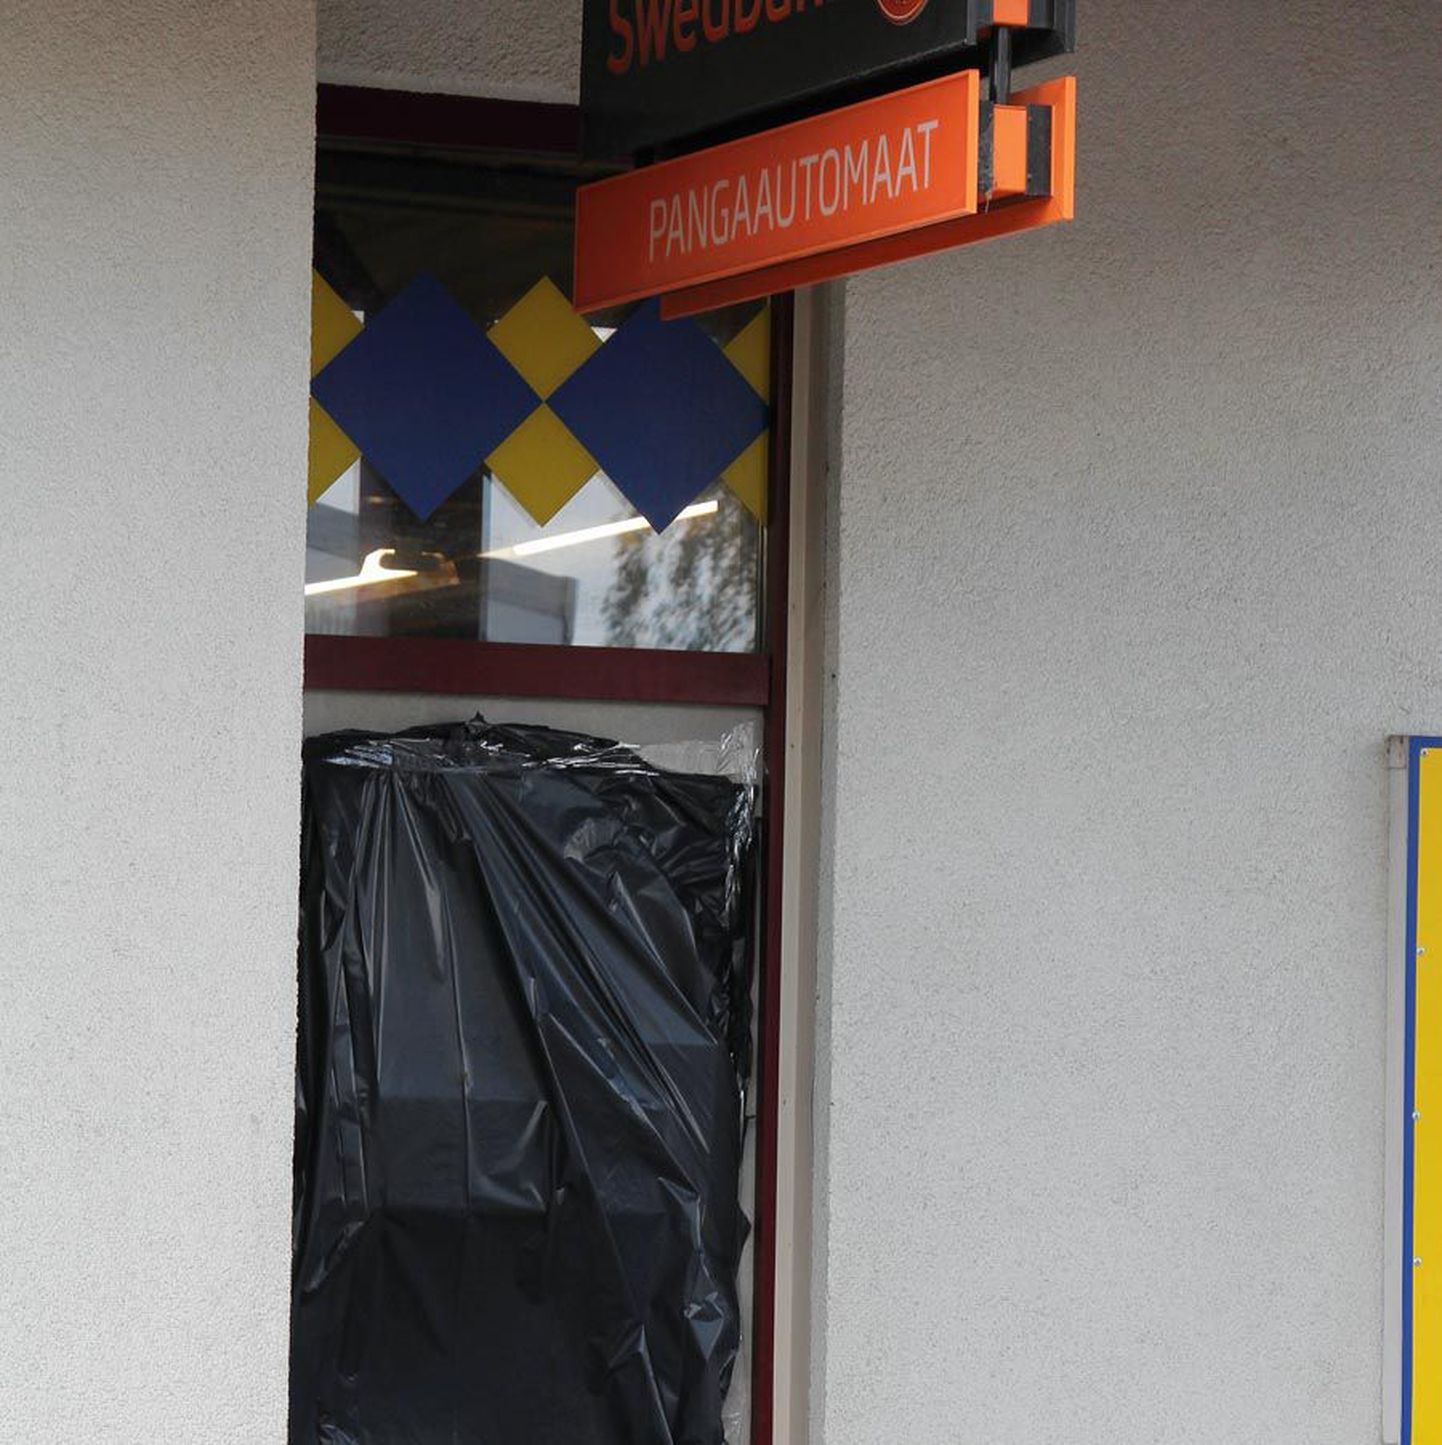 Täna varahommikul rünnati Swedbanki Suure-Jaanis asuvat sularahaautomaati.